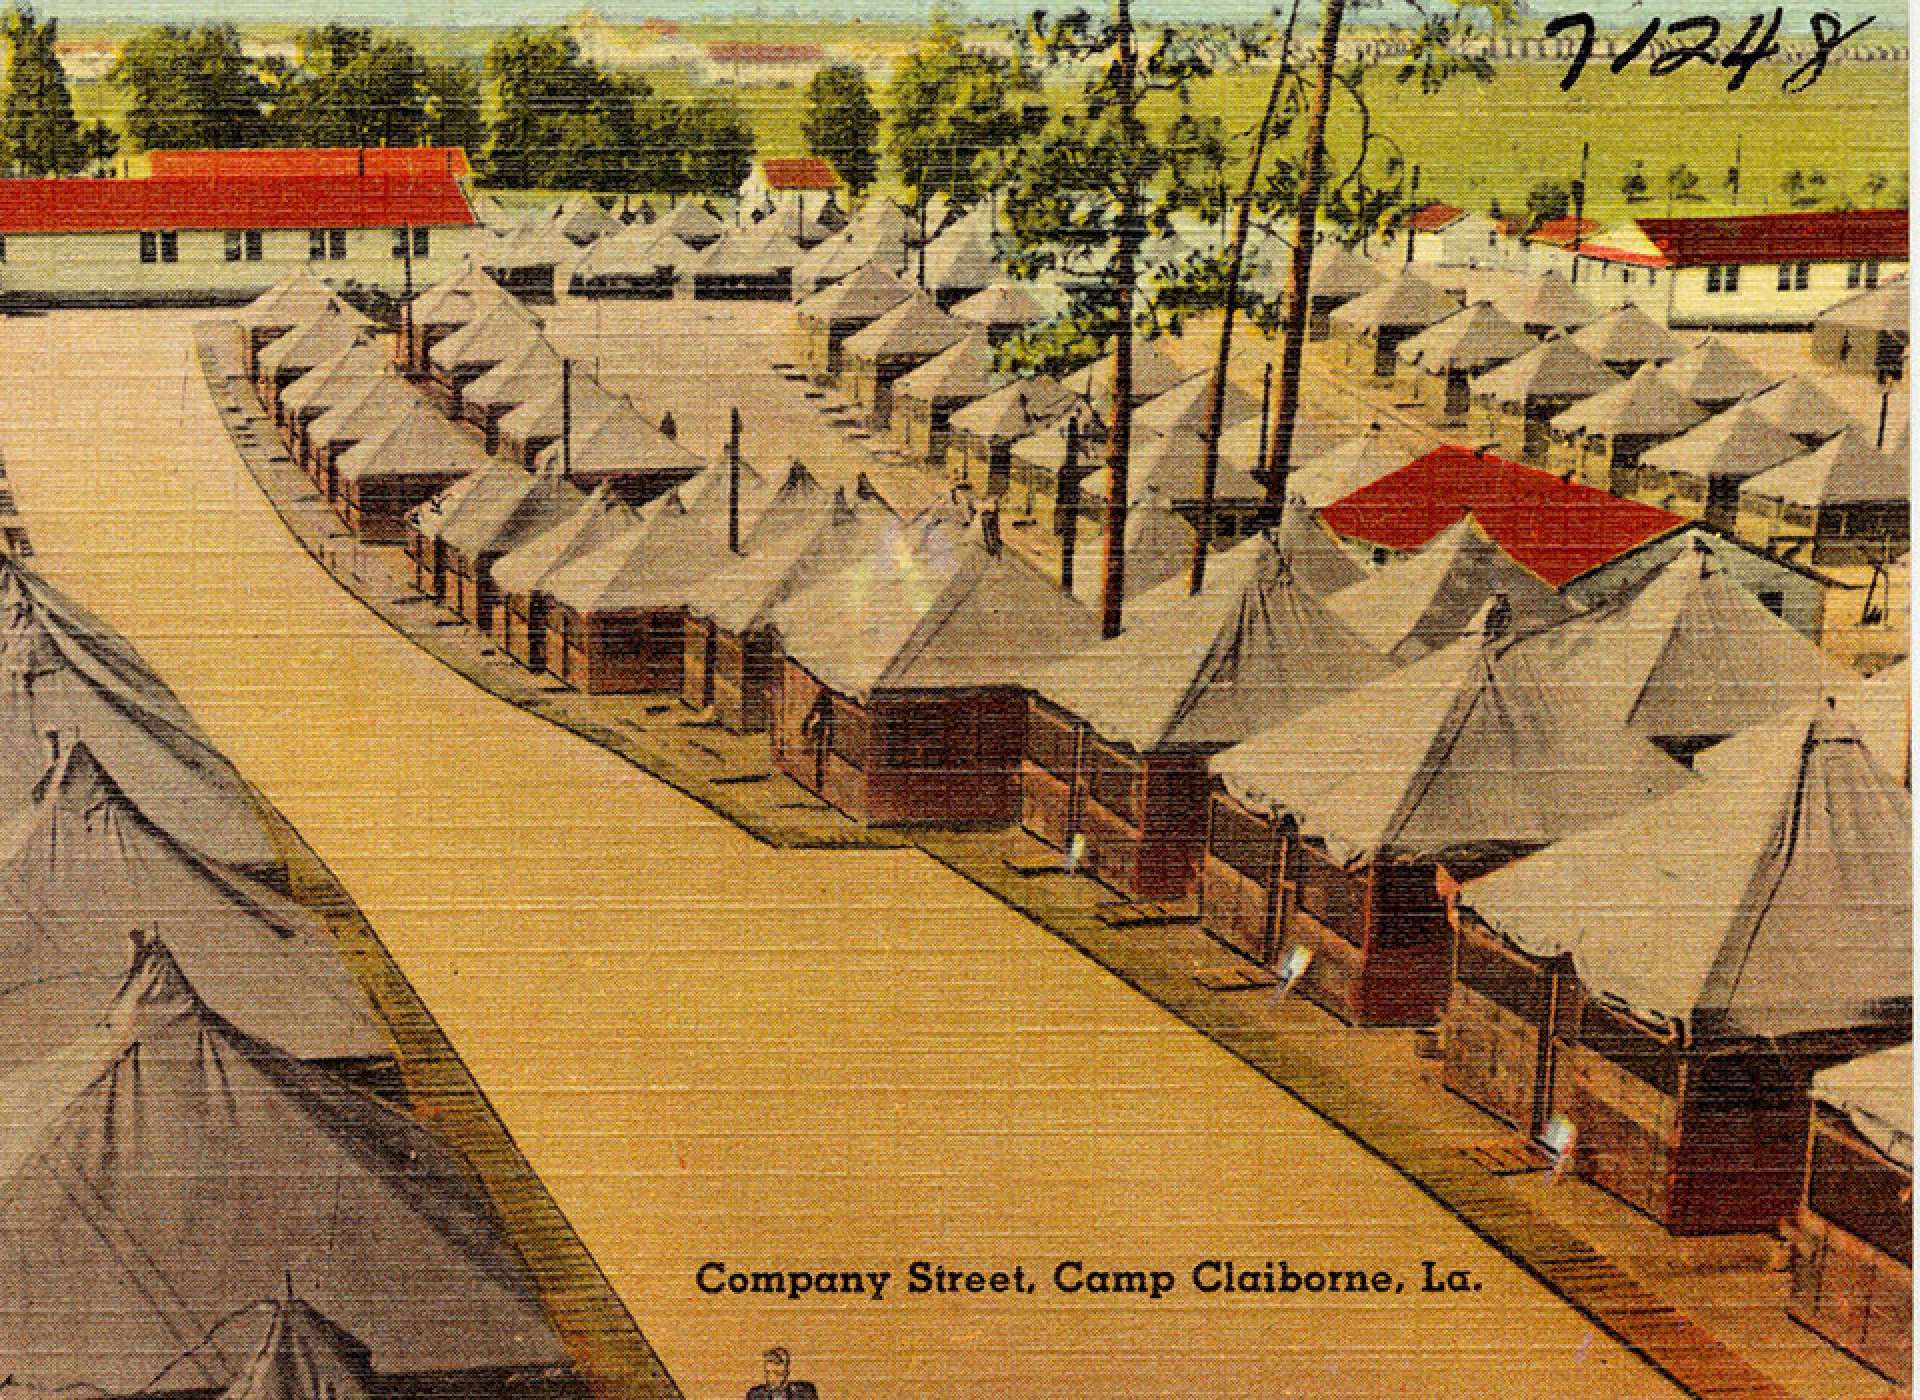 Camp Claiborne